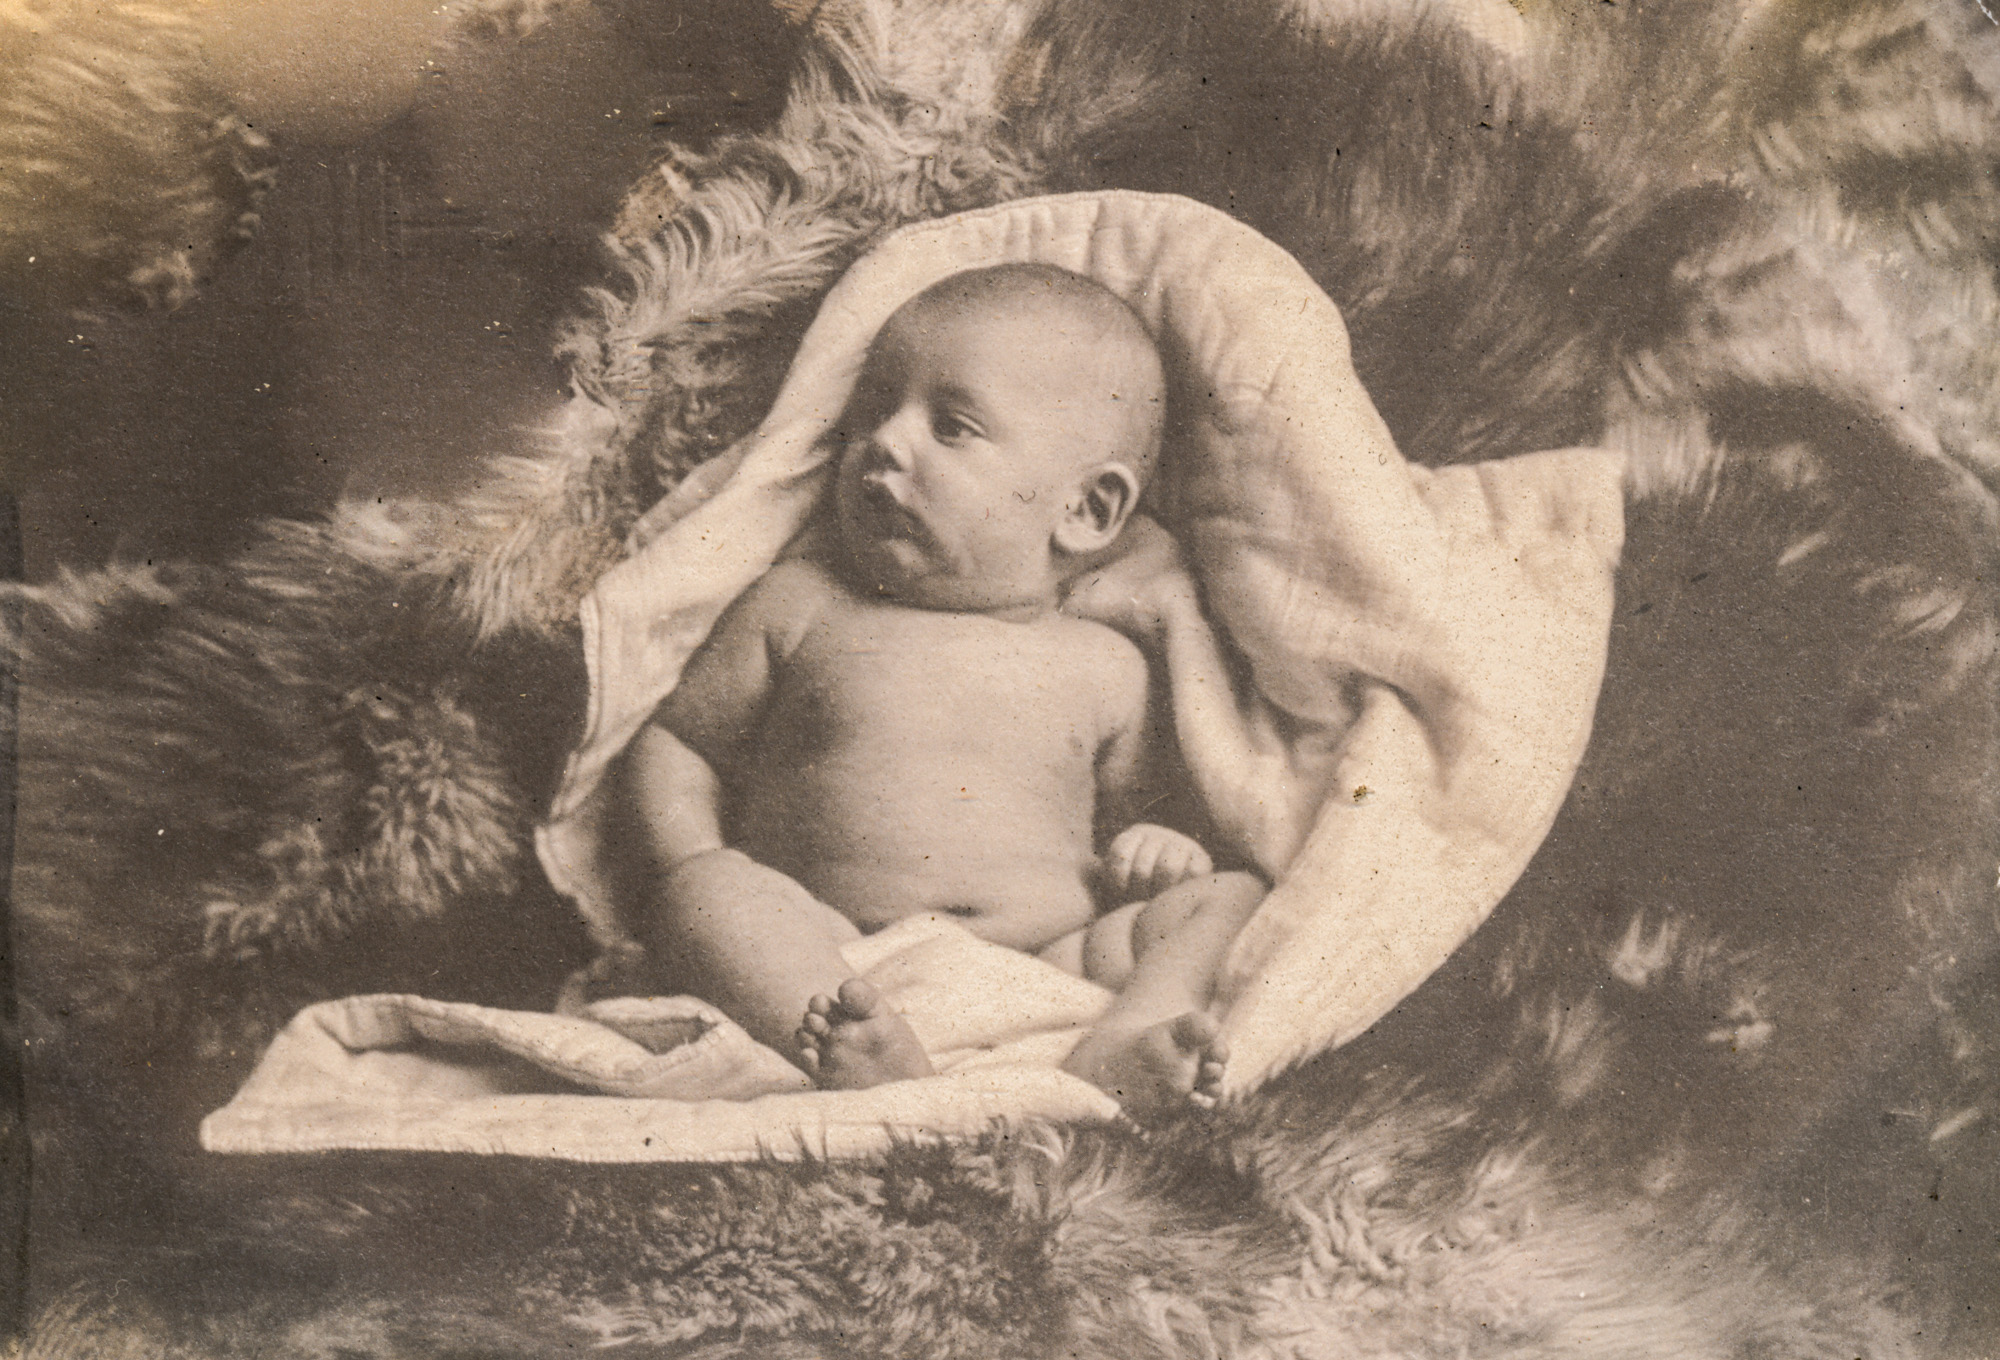 Dauth Family Archive - 1904 - June Dauth Newborn - Photo 1